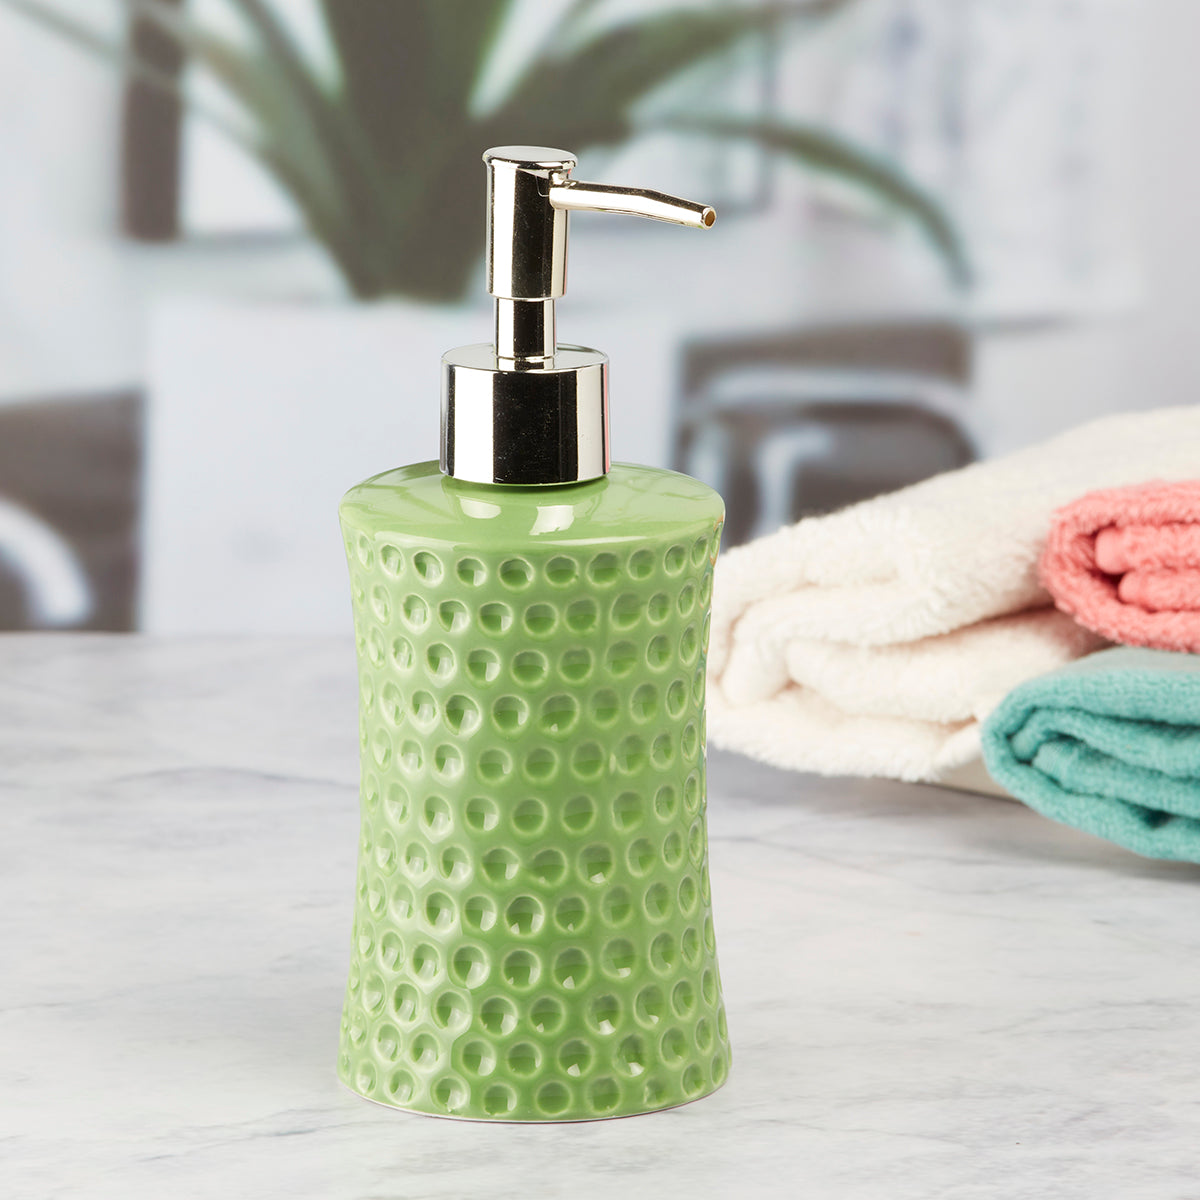 Kookee Ceramic Soap Dispenser for Bathroom handwash, refillable pump bottle for Kitchen hand wash basin, Set of 1, Green (8042)